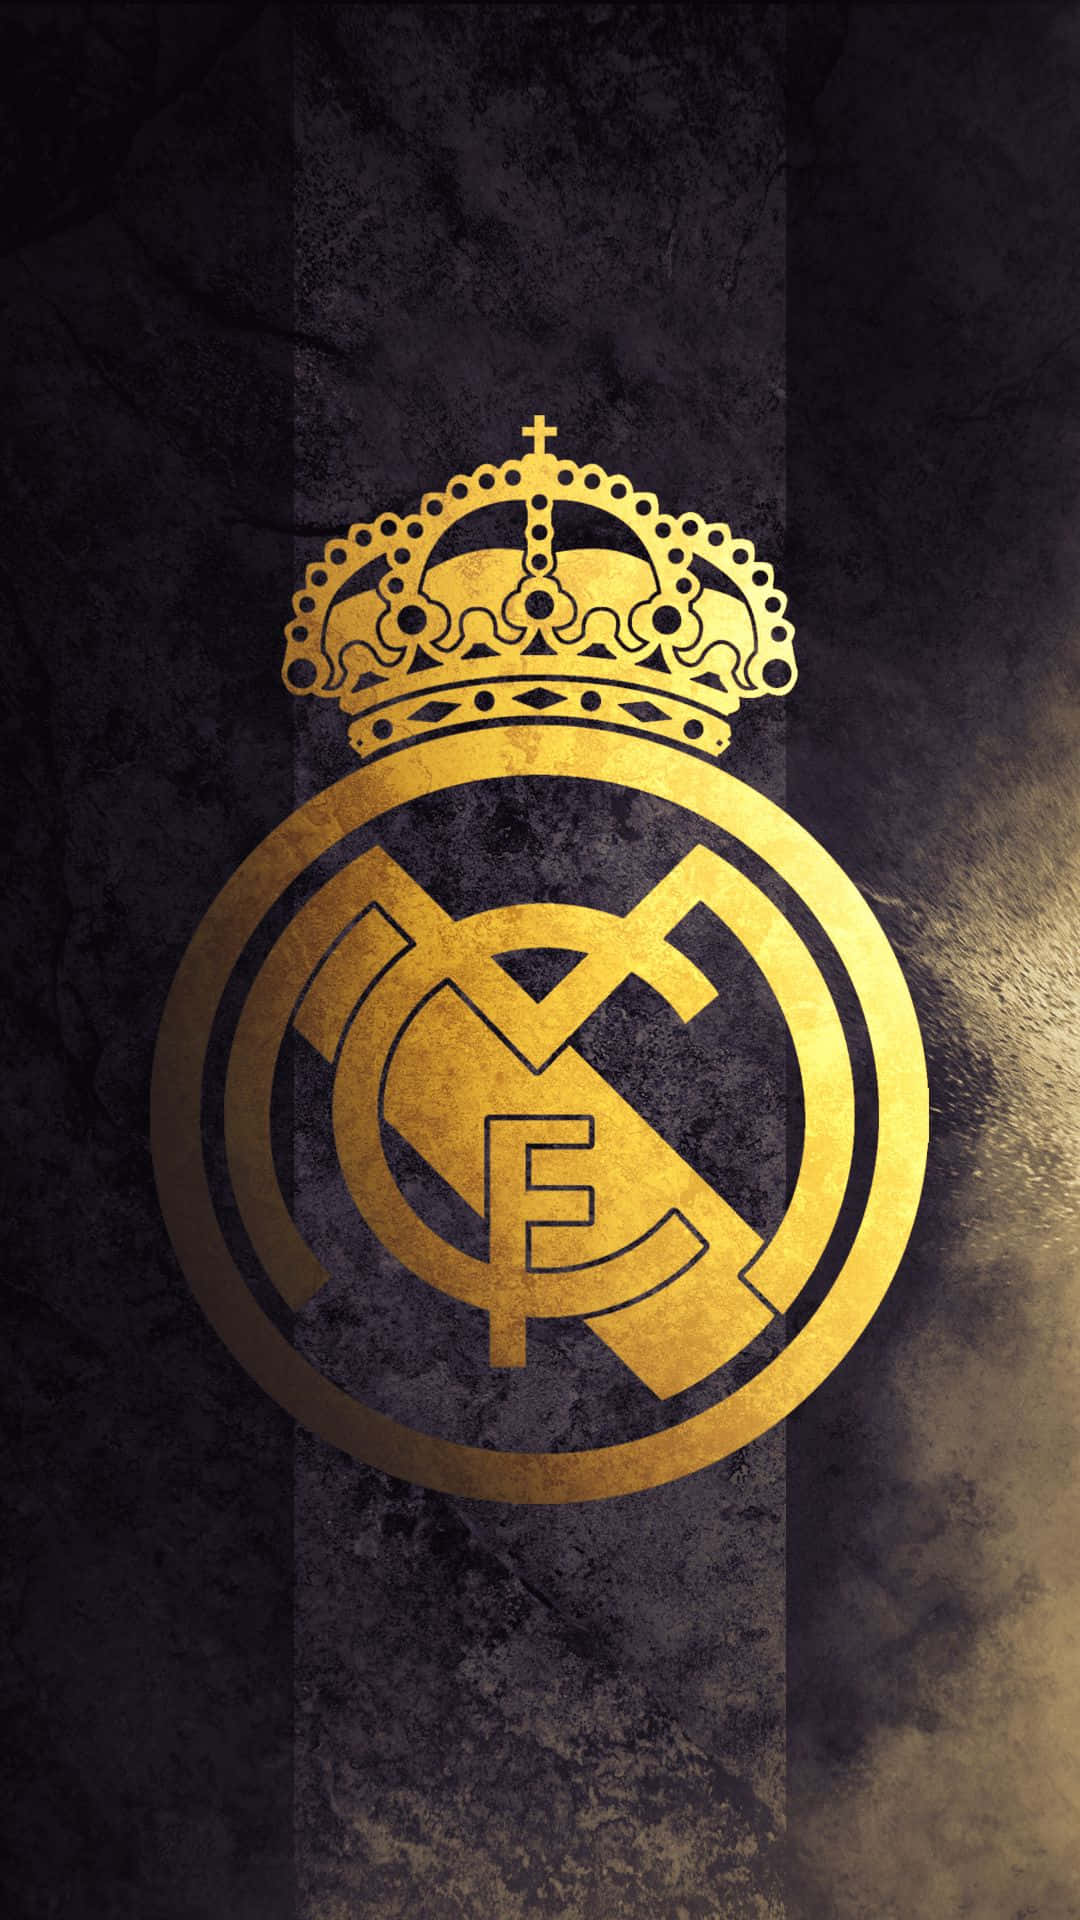 Detbästa Fotbollslaget I Världen - Real Madrid